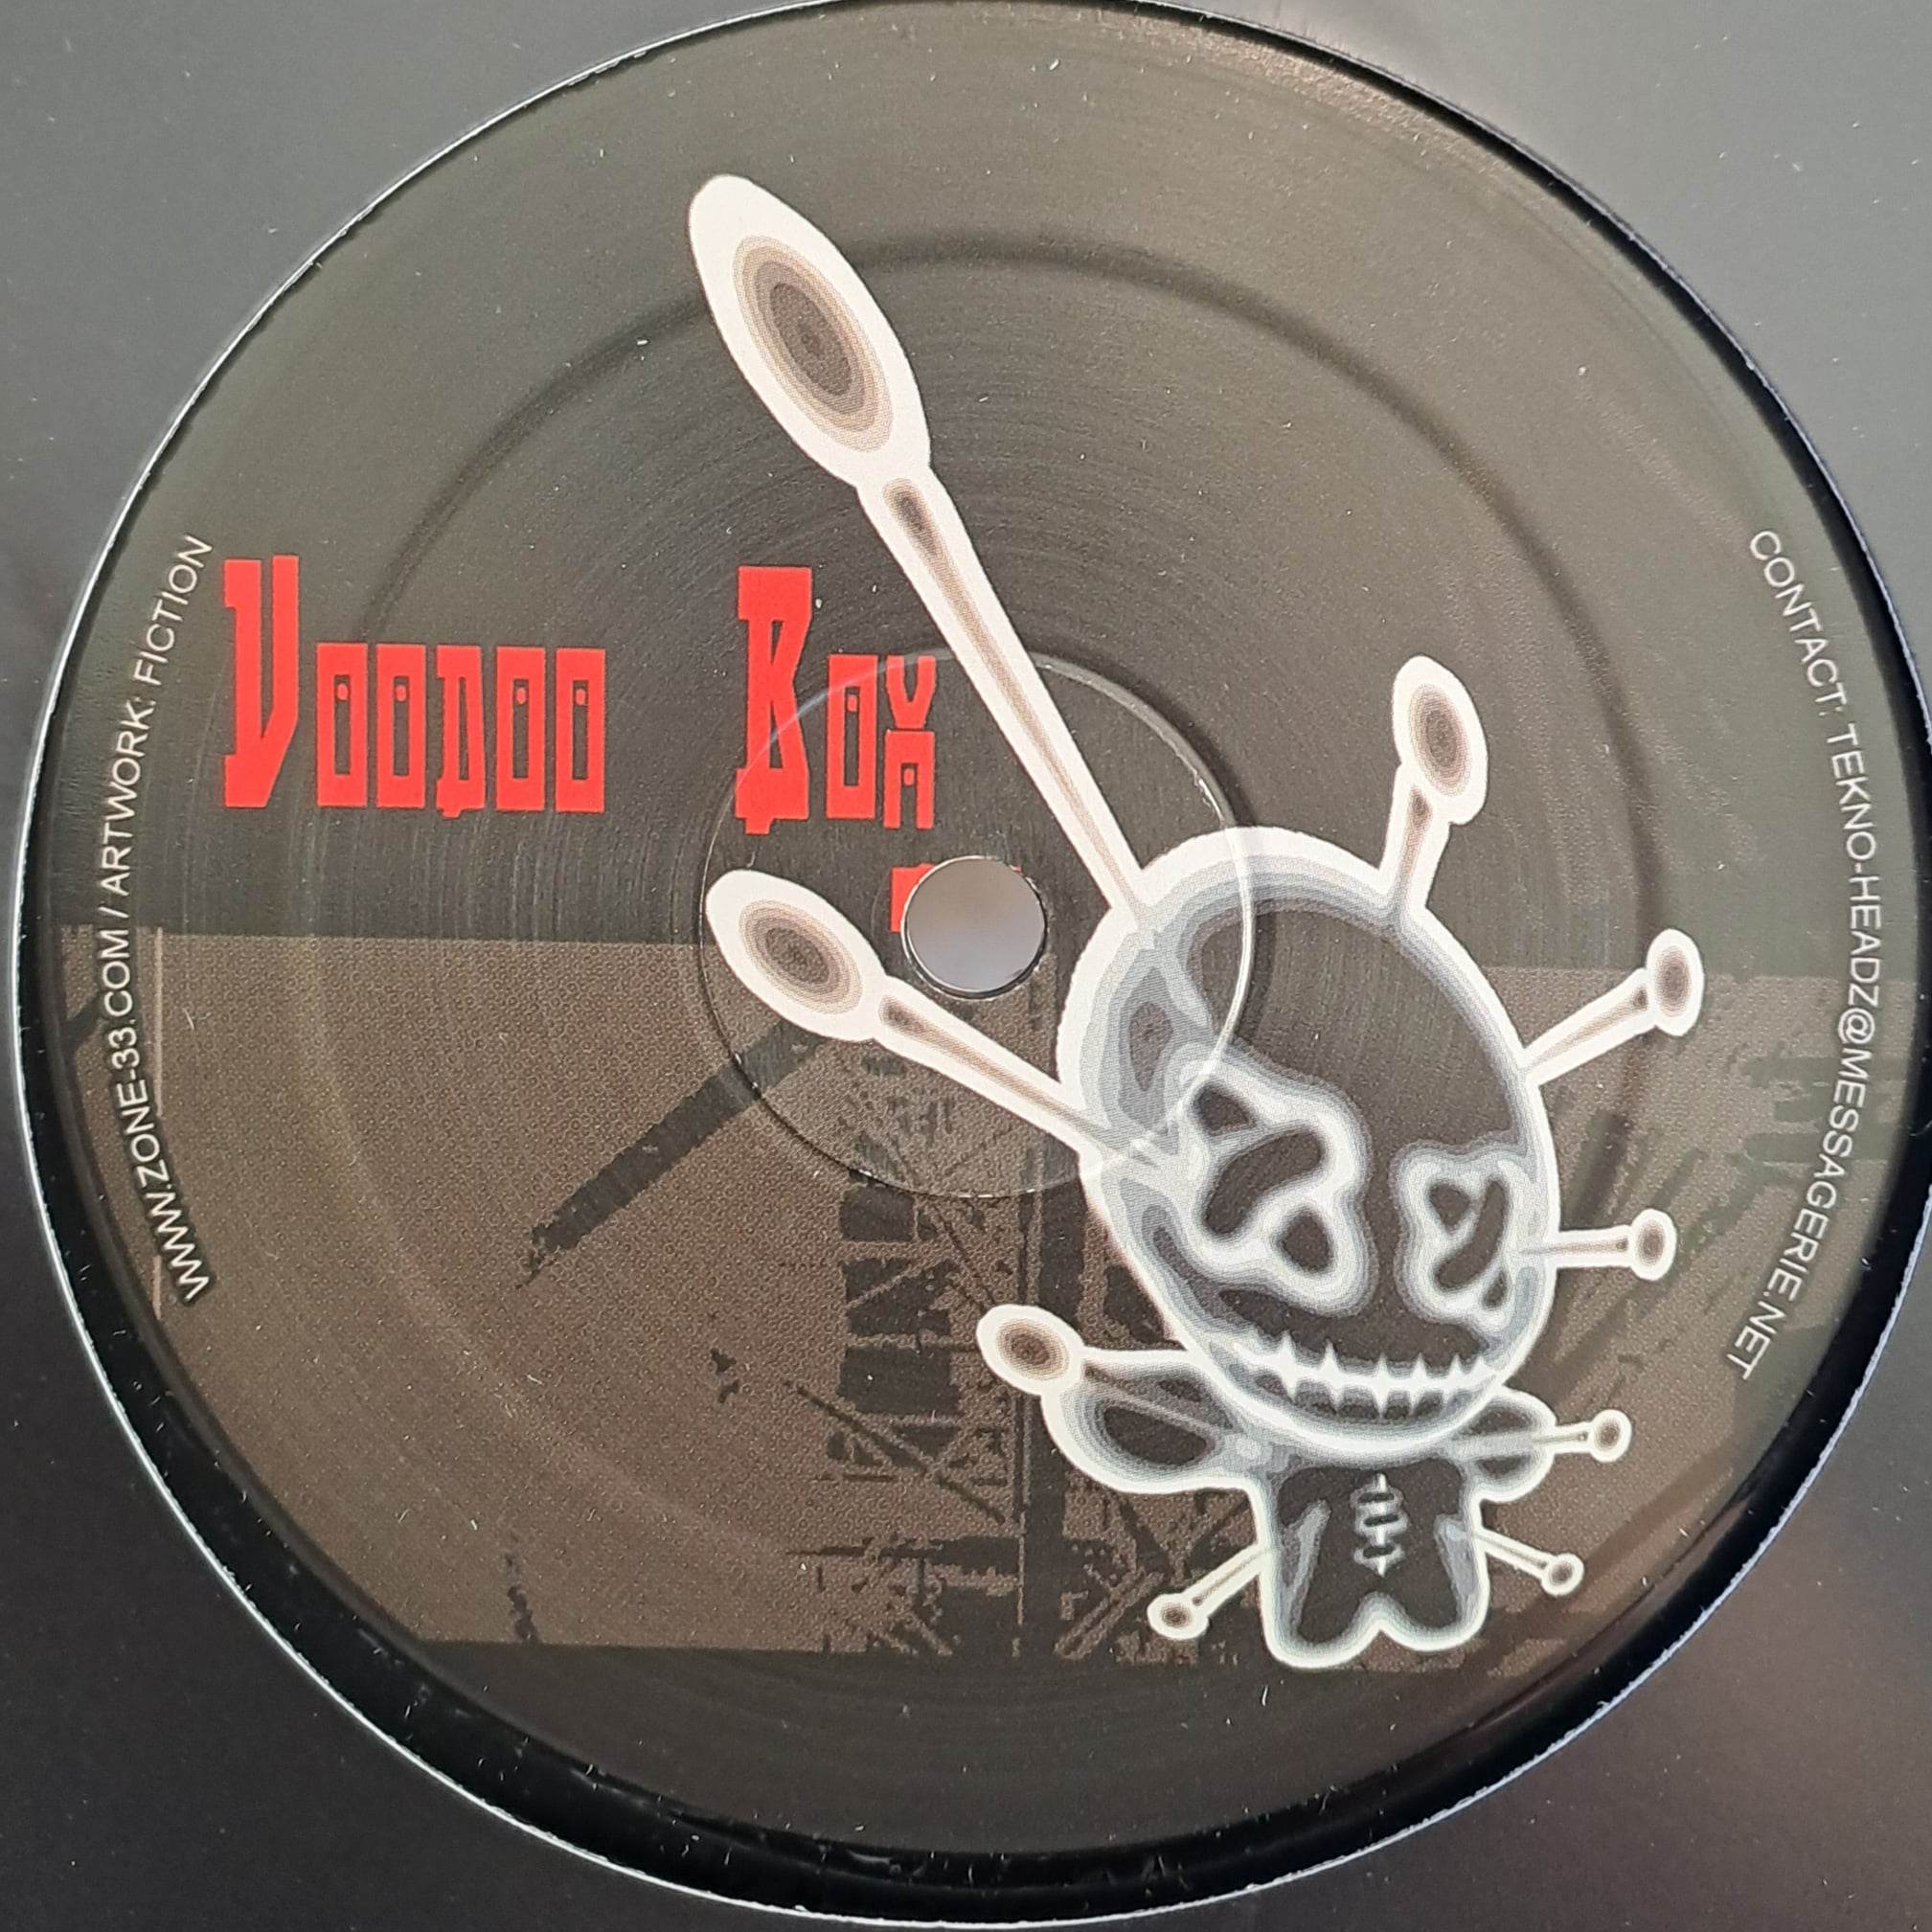 Voodoo Box 01 RP (toute dernière copie en stock) - vinyle freetekno